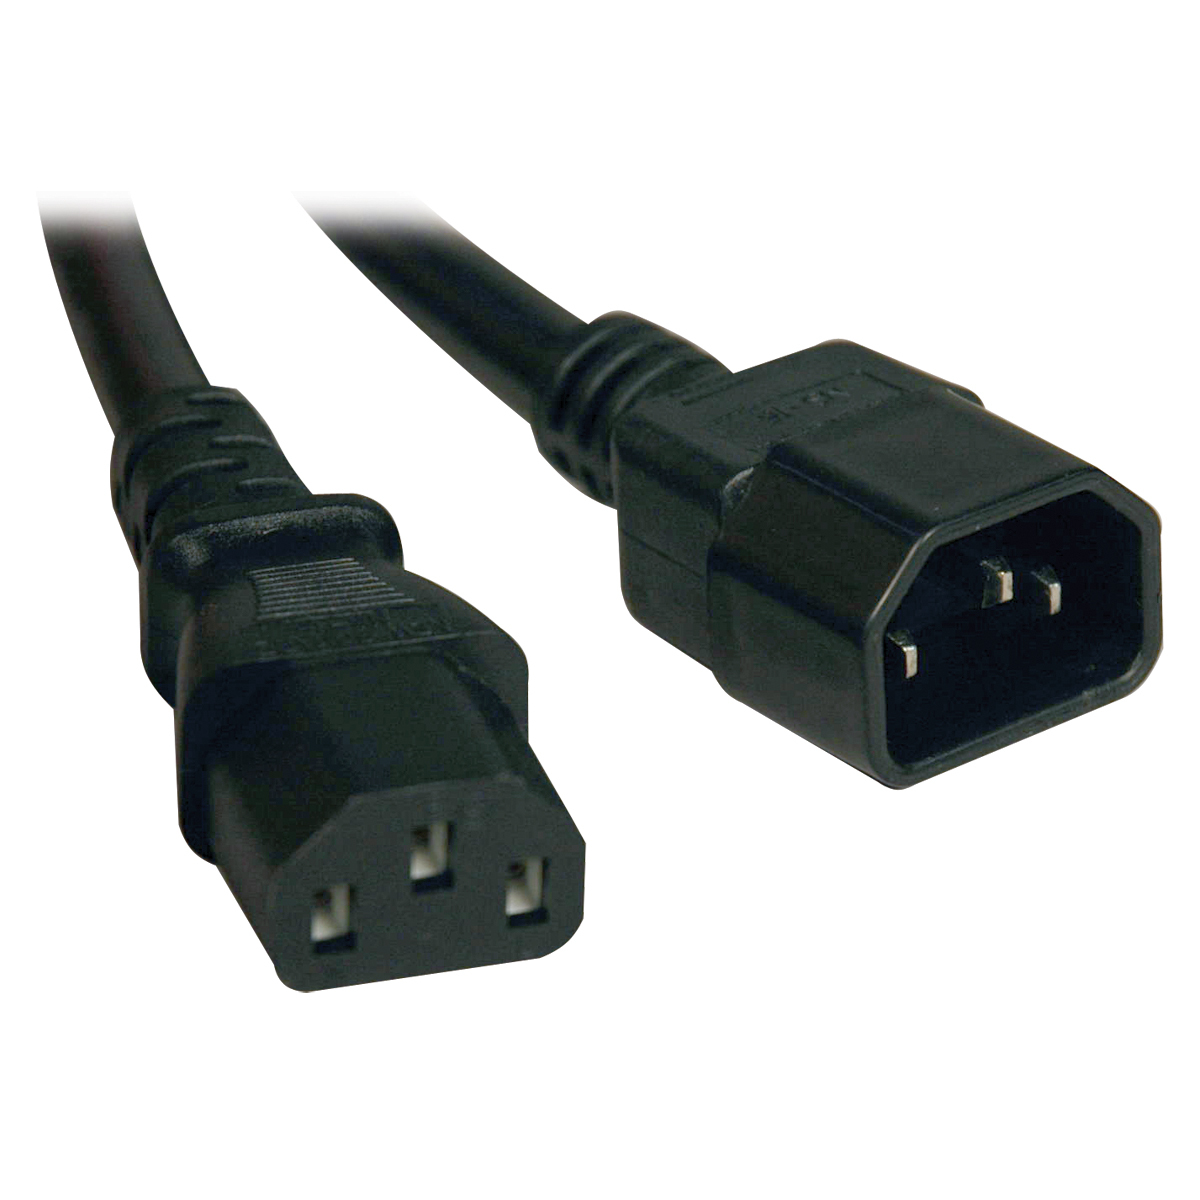 Cable De Poder Tripp Lite C14 Coupler A C13 Coupler 4.57M P004-015